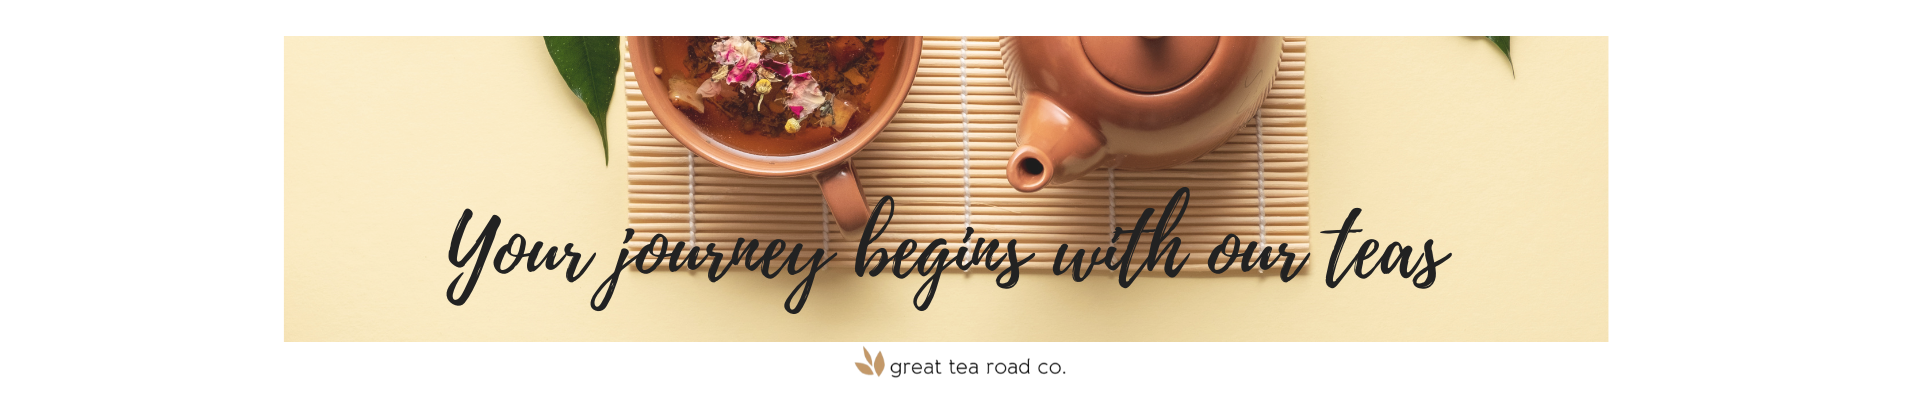 great tea road, oolong tea, organic tea, loose leaf tea, tea house